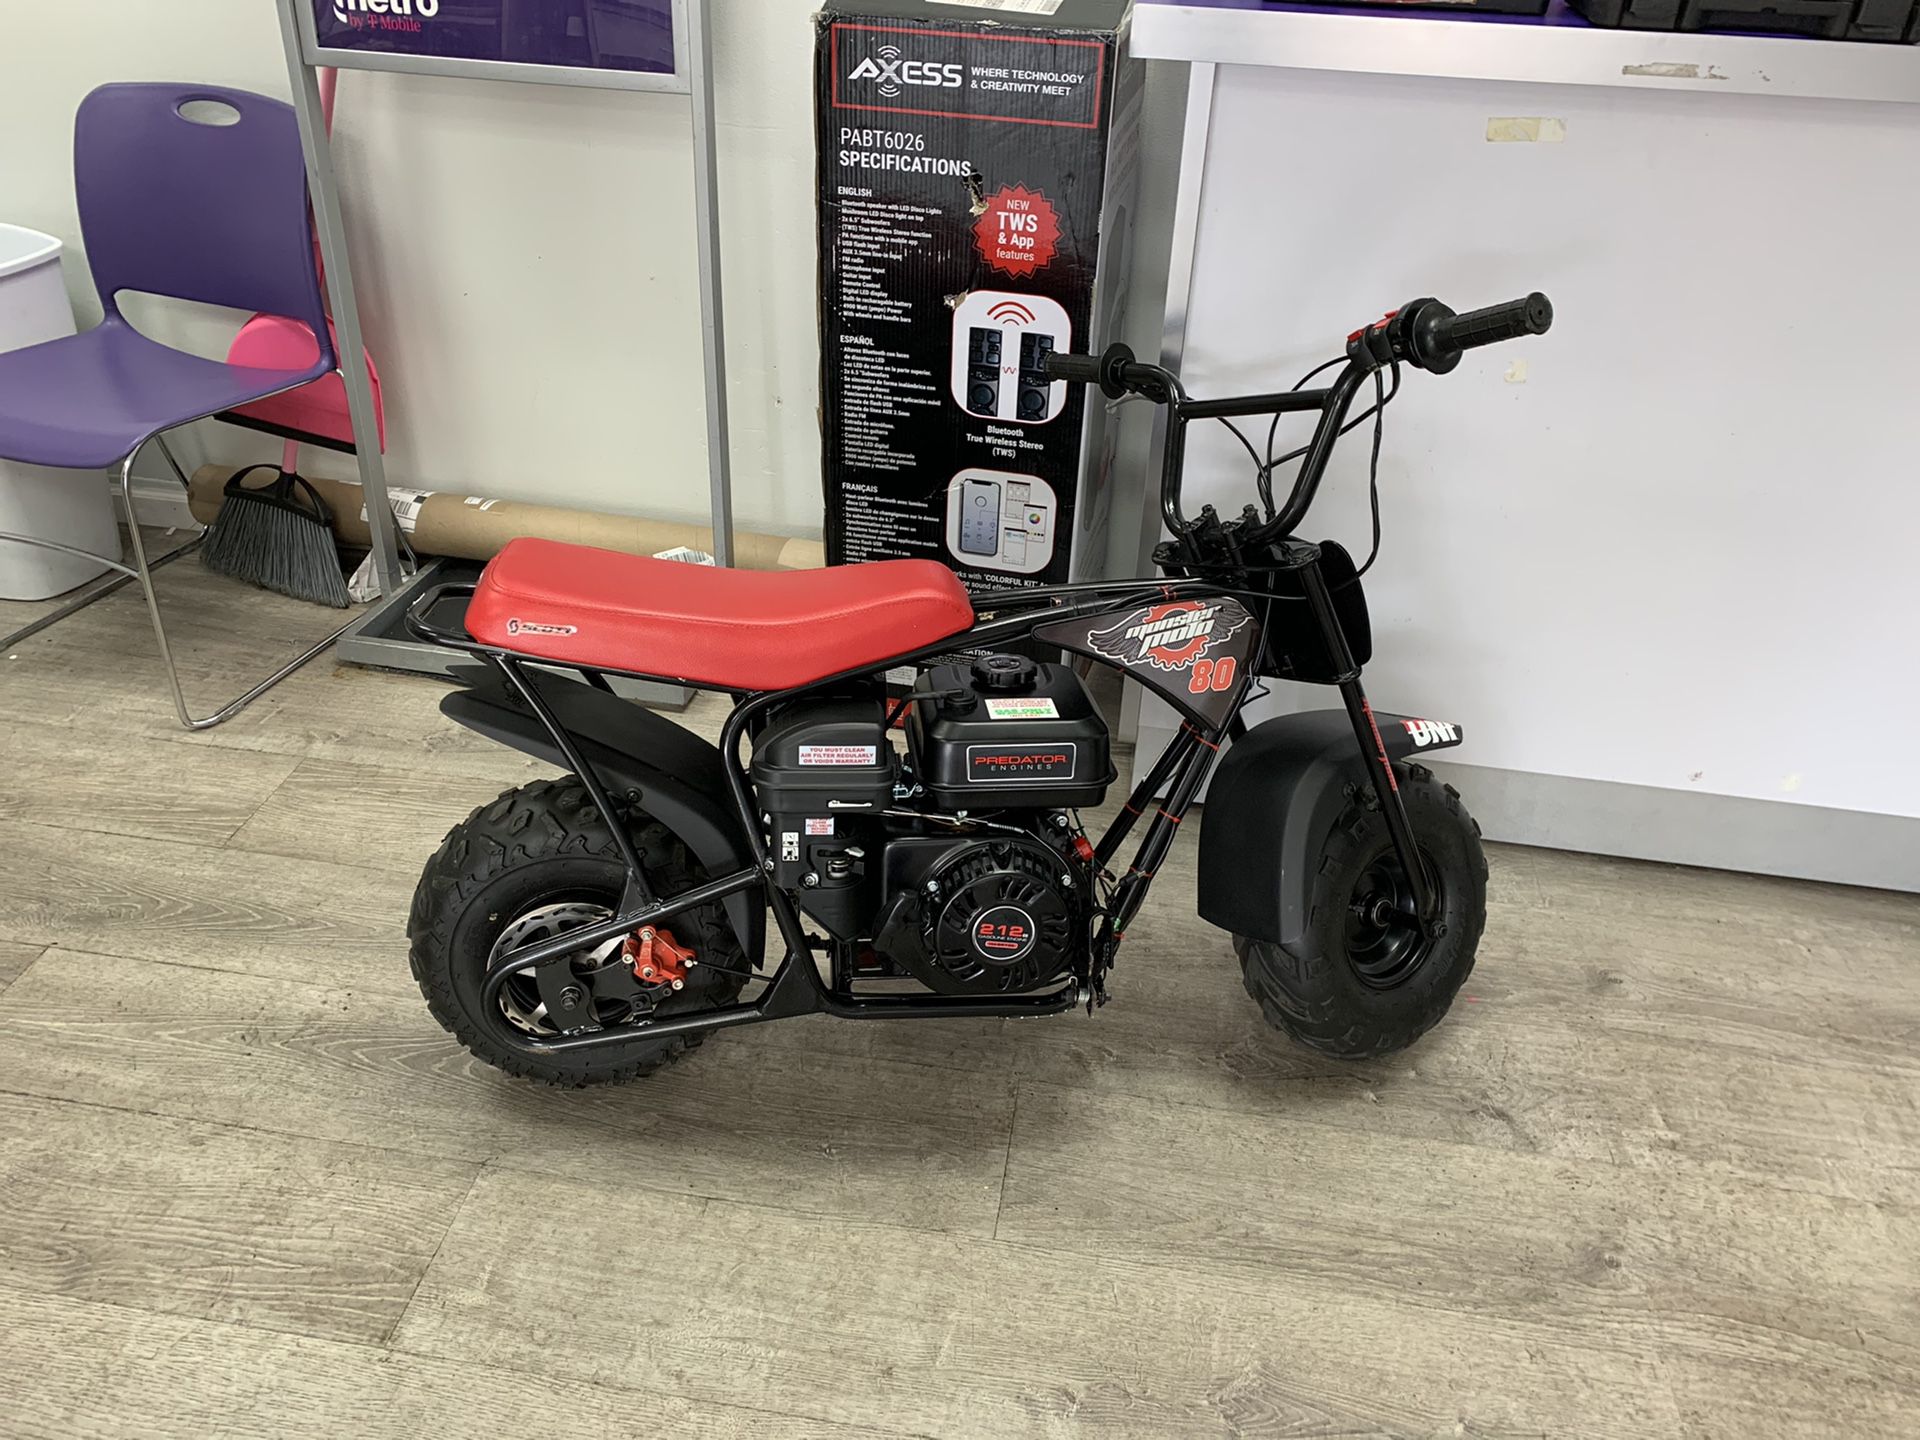 Monster moto 212cc predator mini bike